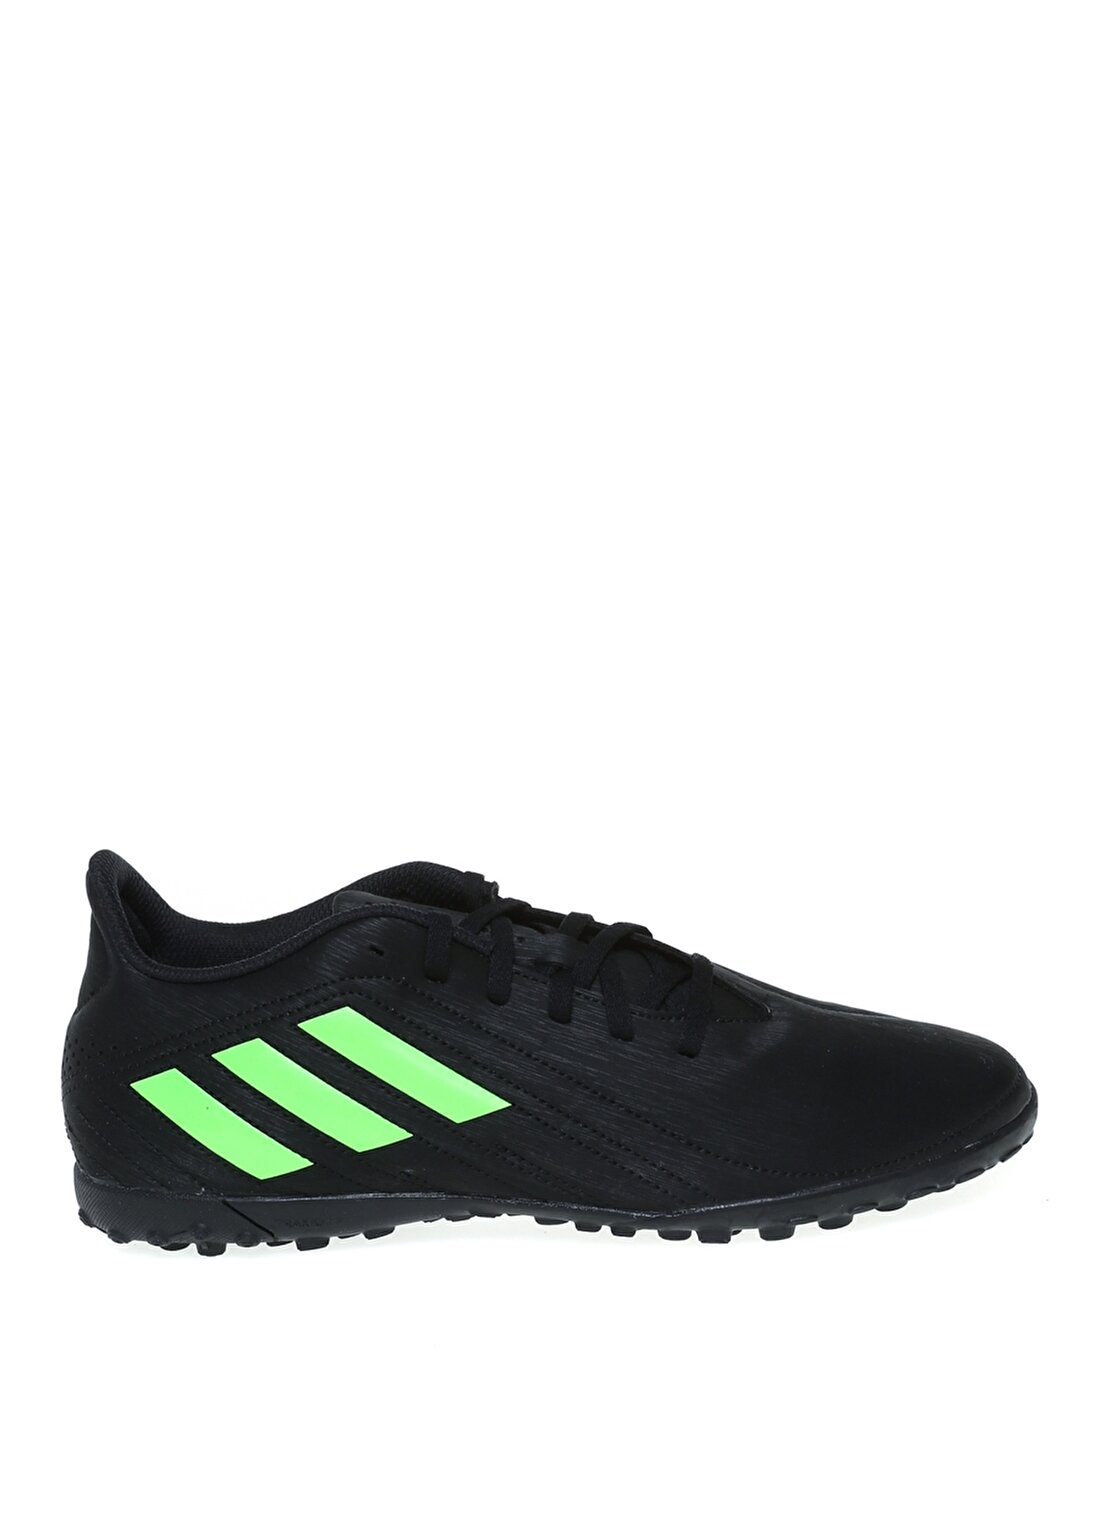 Adidas Q46490 Deportivo Tf Siyah - Yeşil Erkek Futbol Ayakkabısı